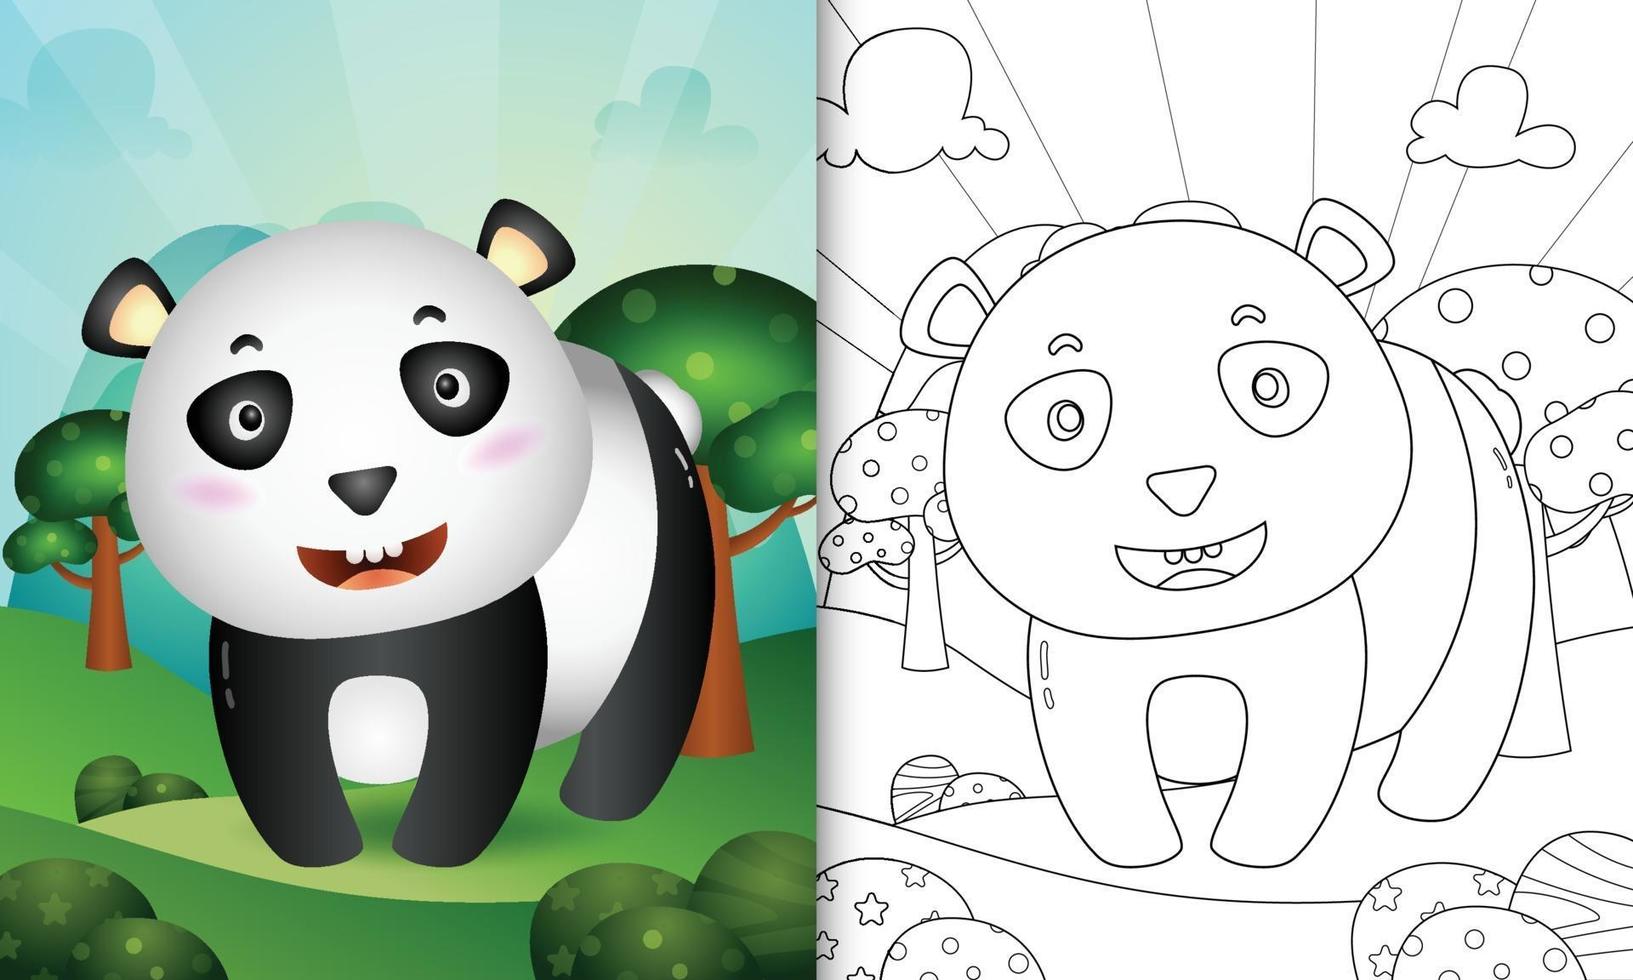 kleurboek voor kinderen met een schattige panda beer karakter illustratie vector